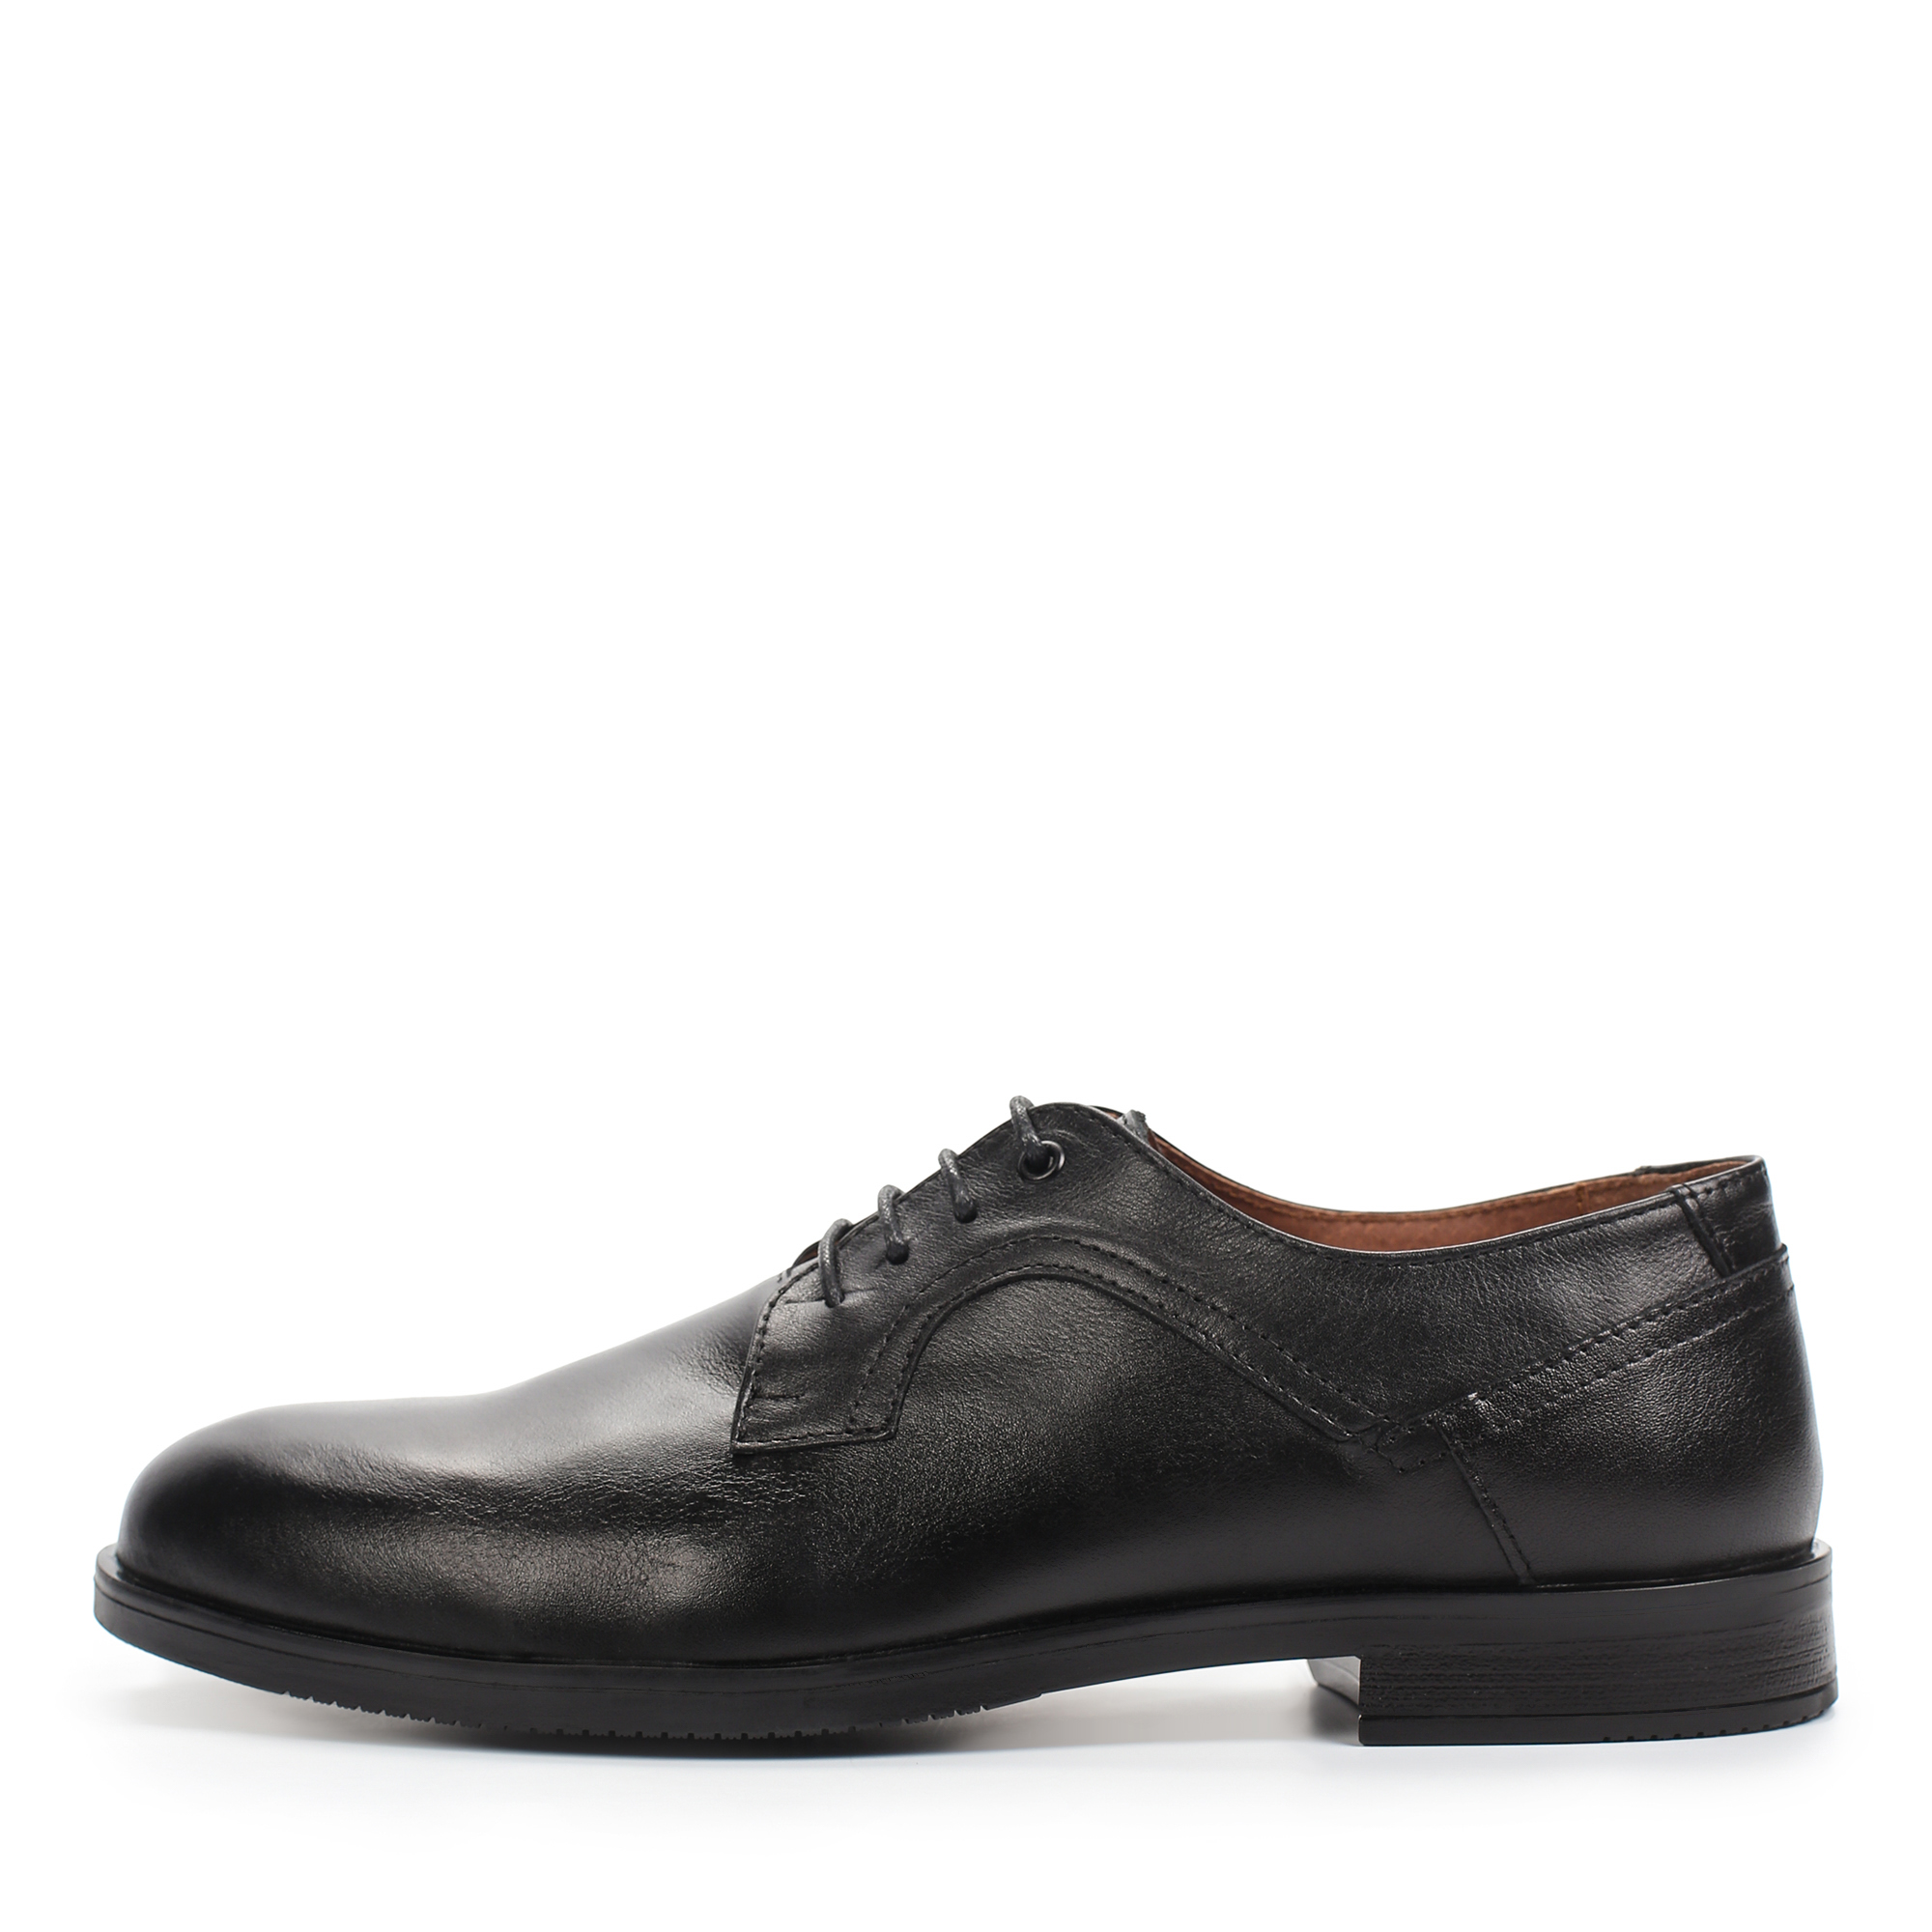 Туфли/полуботинки Thomas Munz 302-050B-1102, цвет черный, размер 42